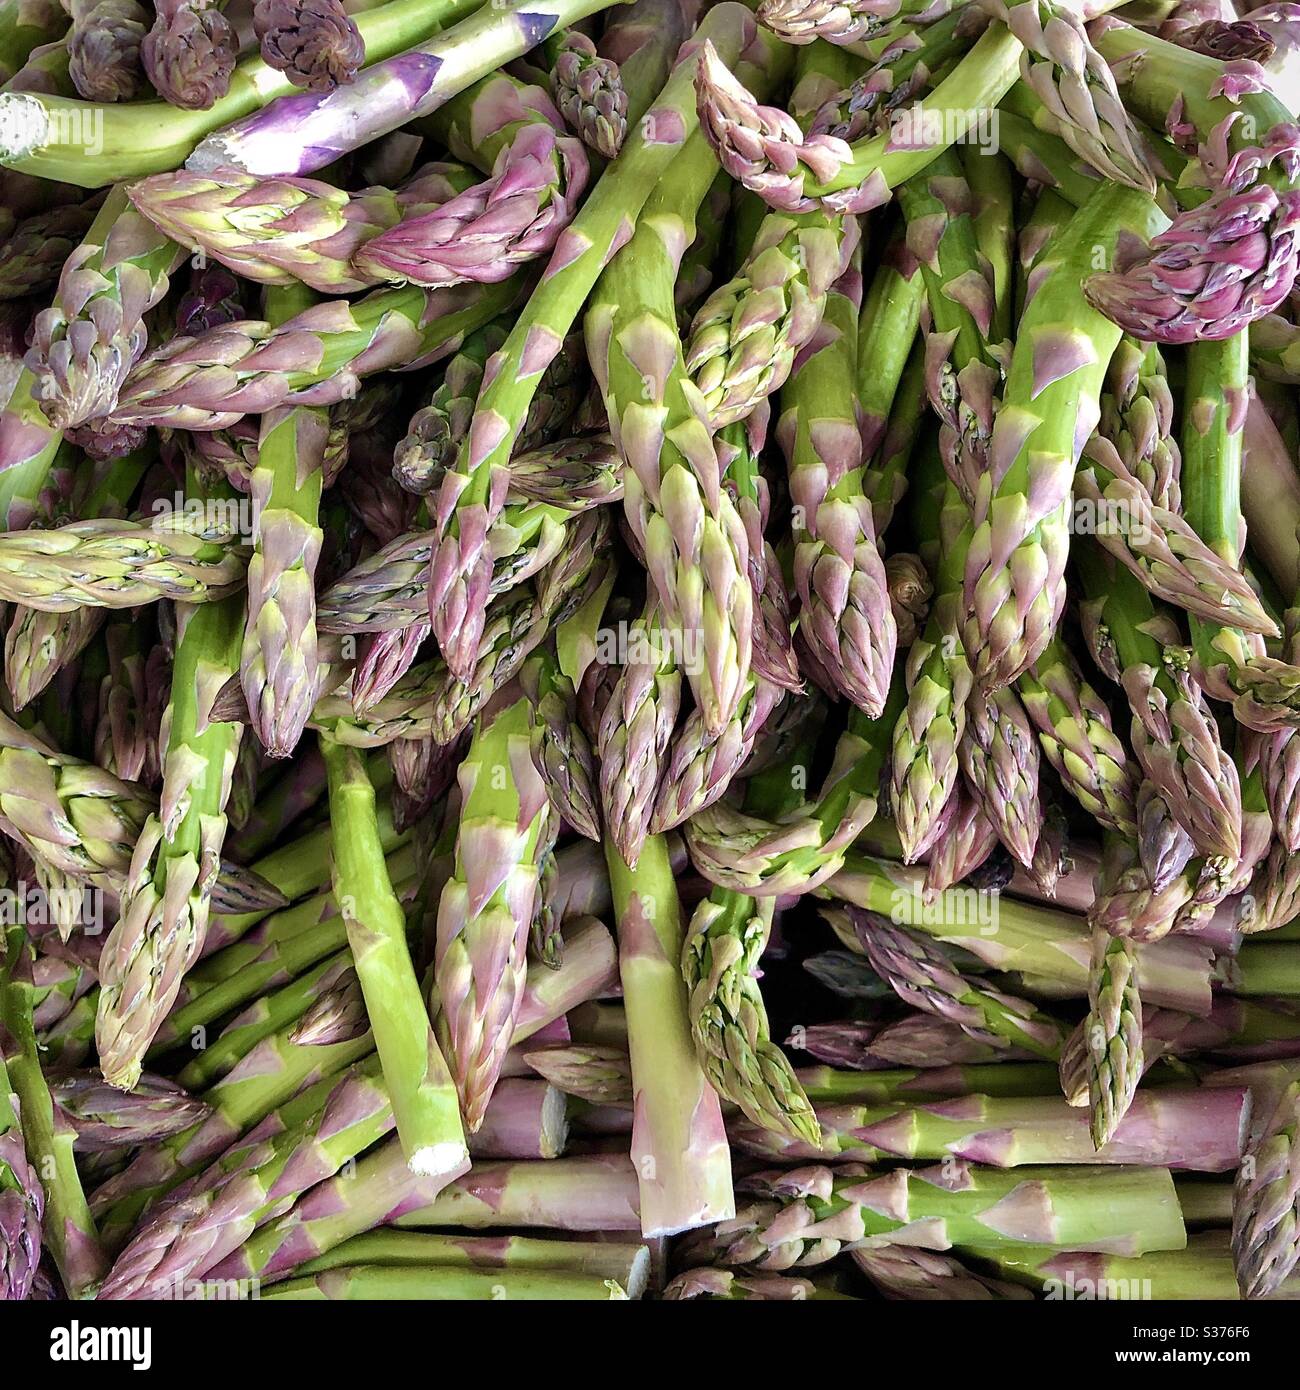 Frische junge Triebe oder Speere von lila gefärbtem grünen Spargel auf Marktstand, Frankreich. Stockfoto